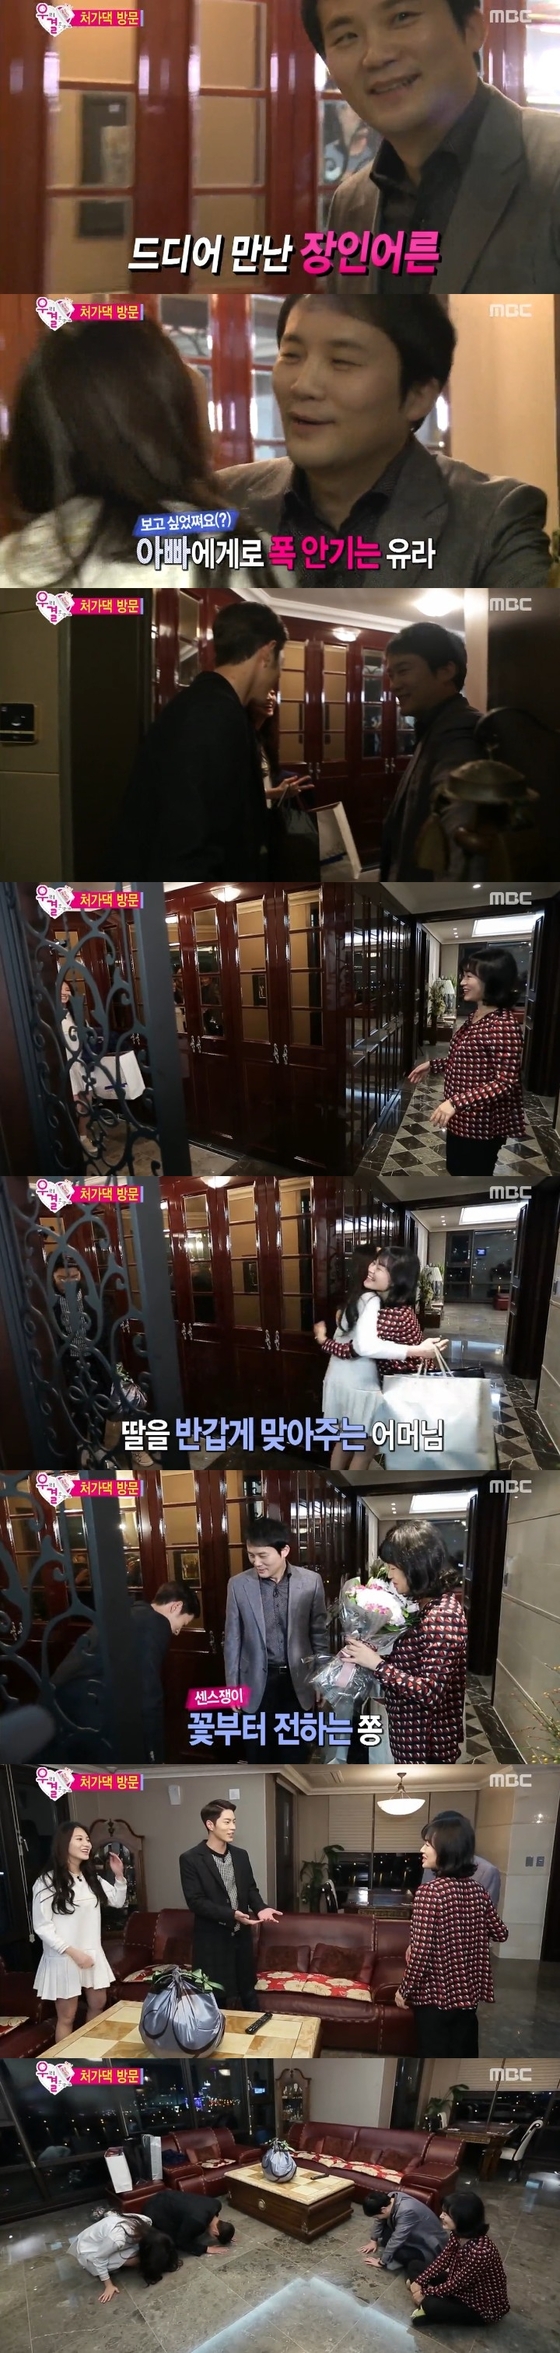 29일 오후 5시 방송된 MBC ´우리 결혼했어요4´에서 유라의 집을 방문하는 홍종현의 모습이 공개됐다. © MBC ´우리 결혼했어요4´ 캡처